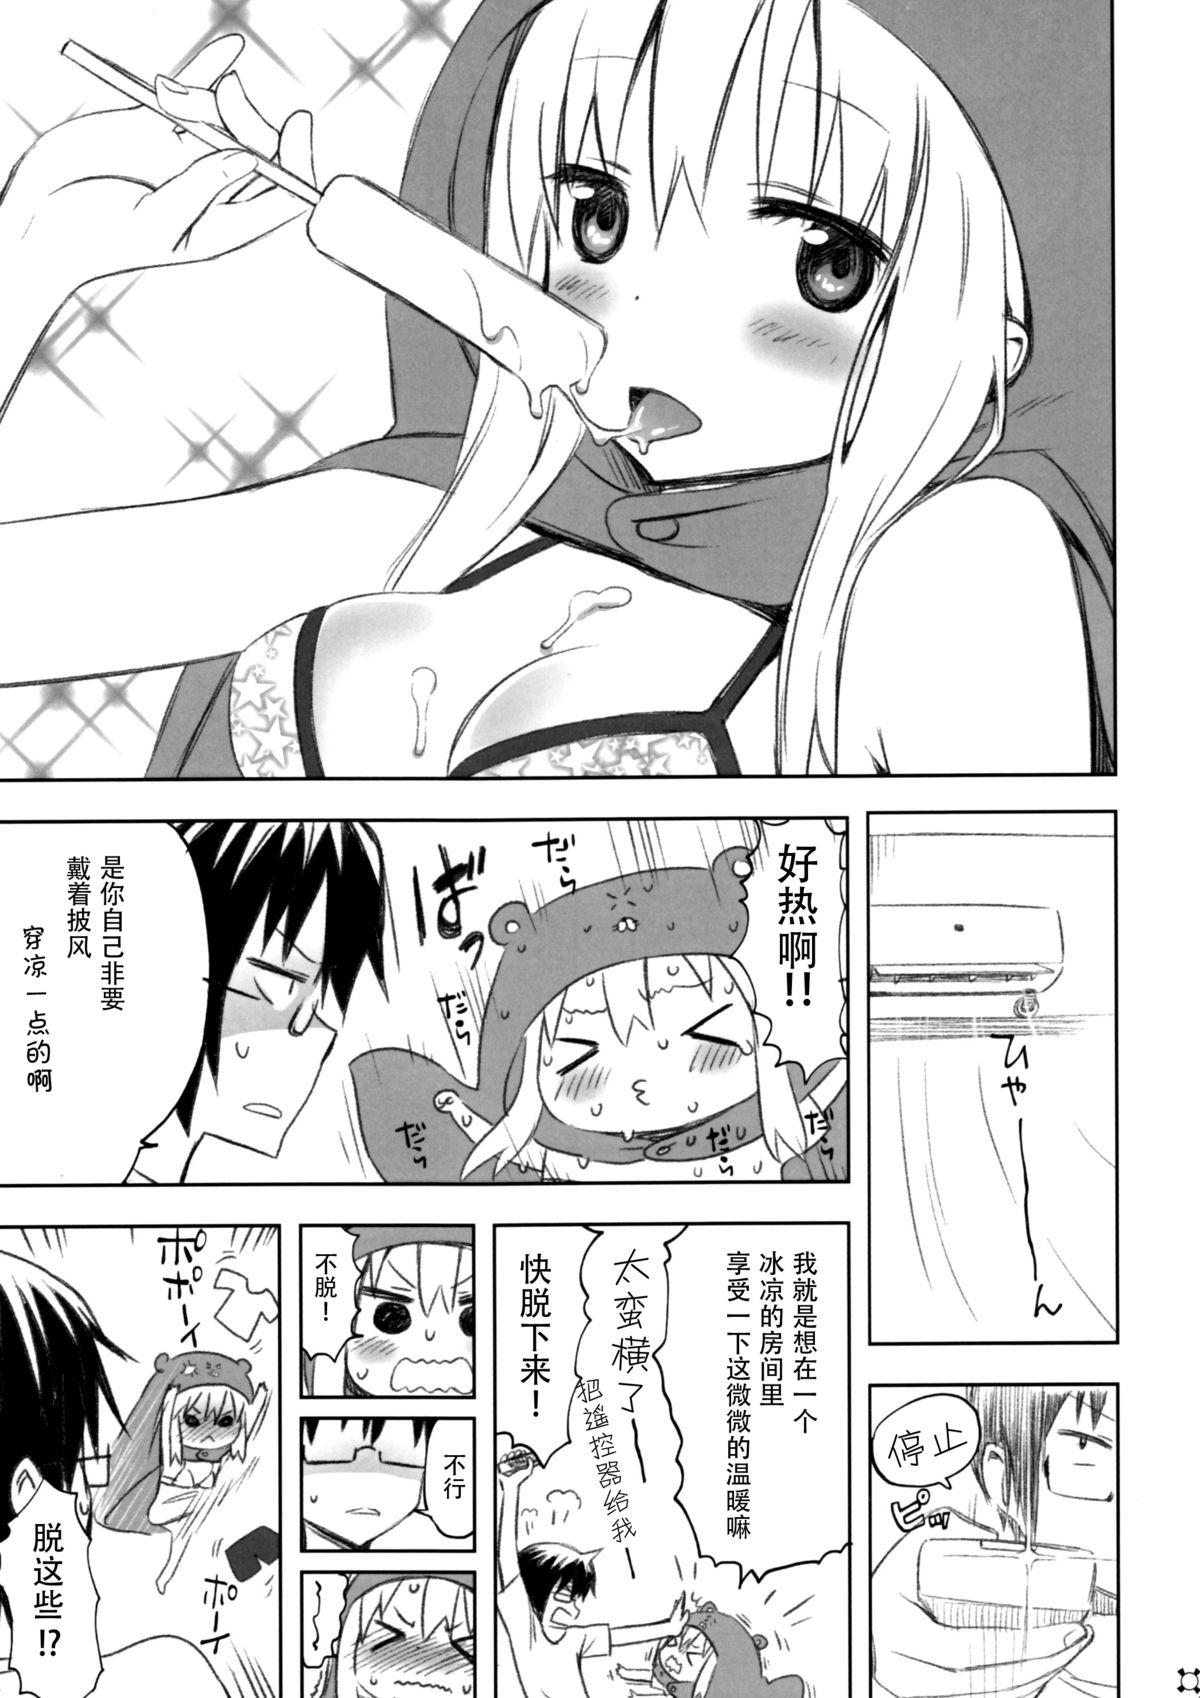 Blackmail Nippon no Natsu. Umaru no Natsu. - Himouto umaru-chan Tits - Page 4